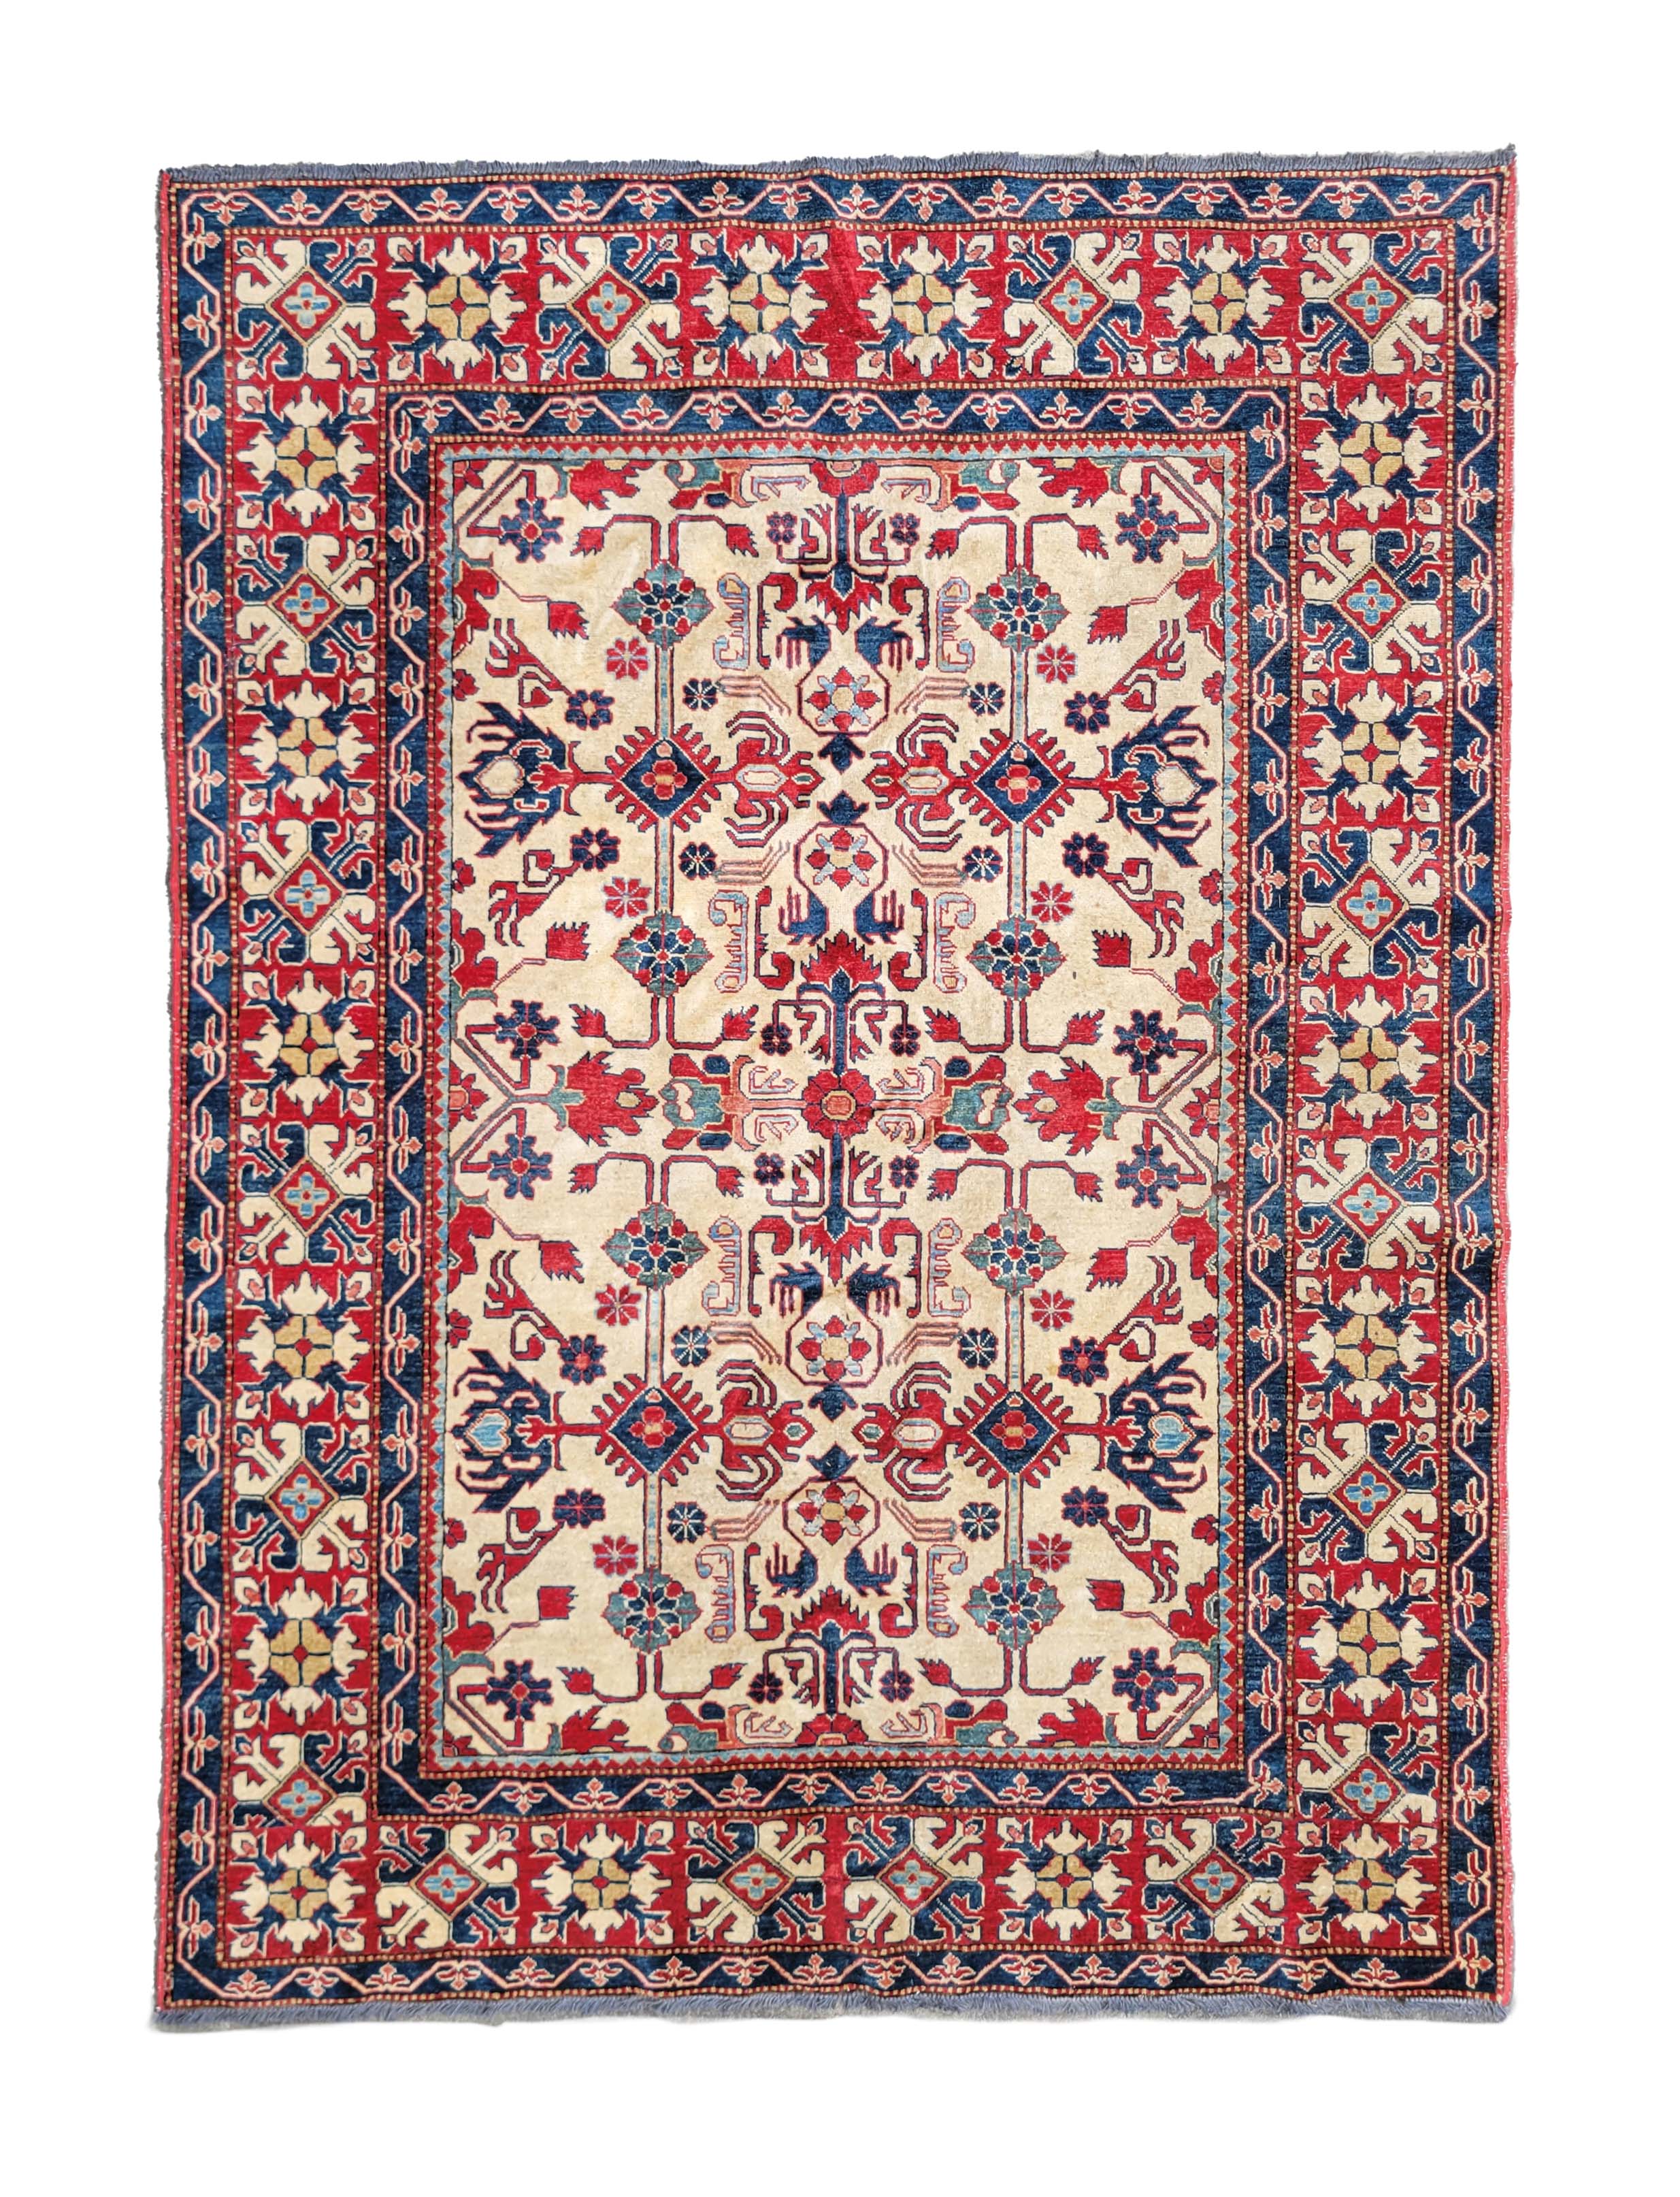 96-5270 Shirvan Kazak Carpet A 155601